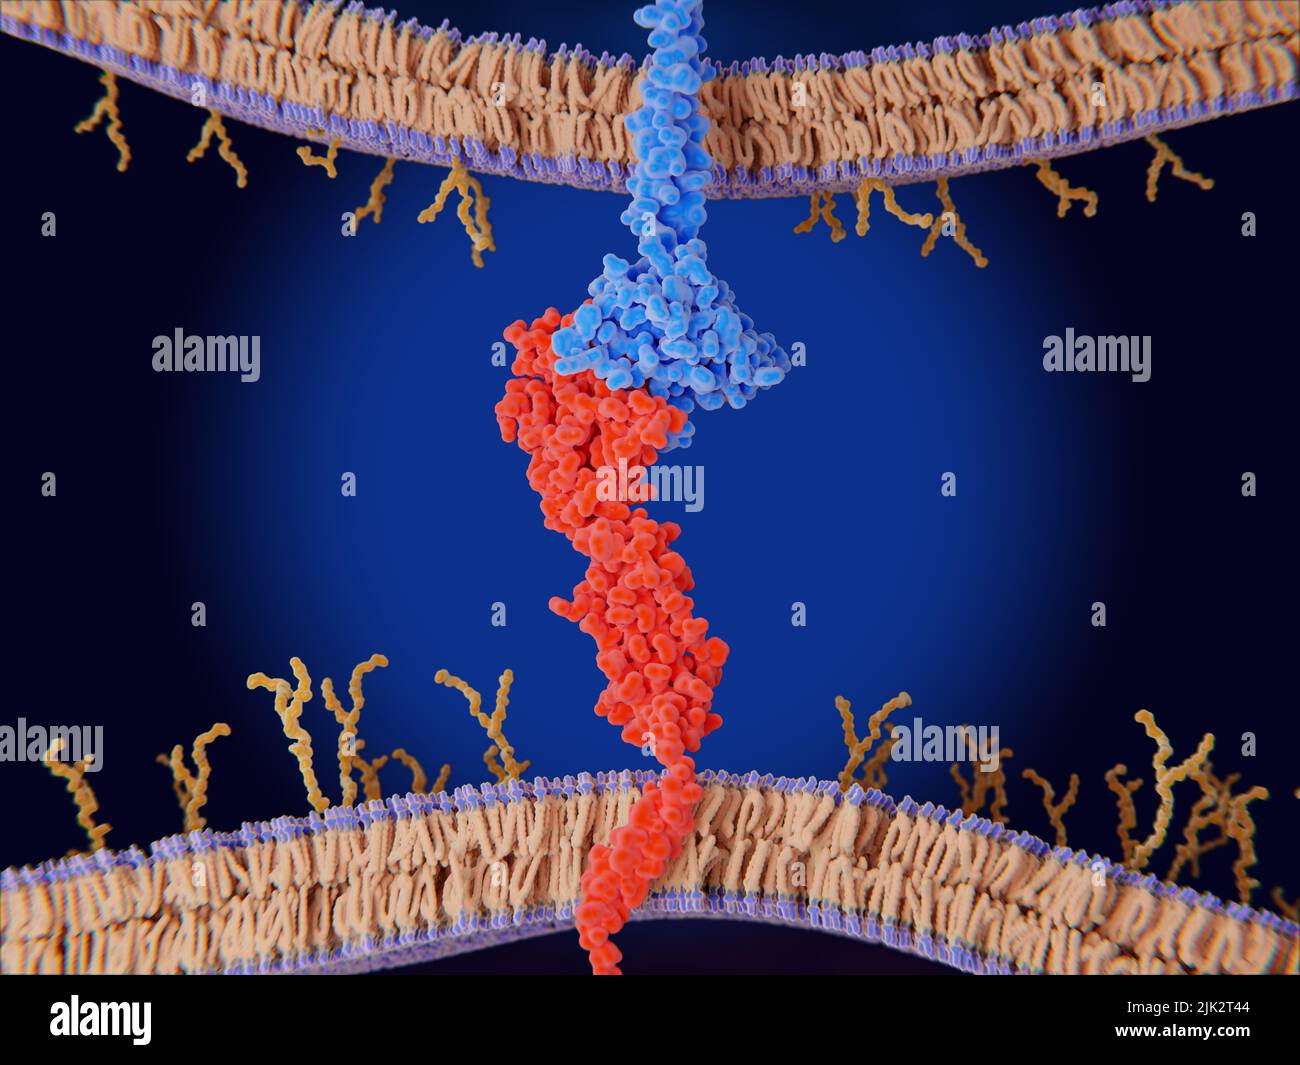 Abbildung zeigt die Bindung zwischen PD-L1 (programmierter Zelltod-Ligand 1, rot) auf der Oberfläche einer Krebszelle und dem Immuncheckpunkt PD-1 (programmiertes Zelltod-Protein 1, blau) auf einer T-Zelle. Diese Bindung hemmt die T-Zelle daran, andere Zellen, einschließlich Krebszellen, abzutöten. Stockfoto